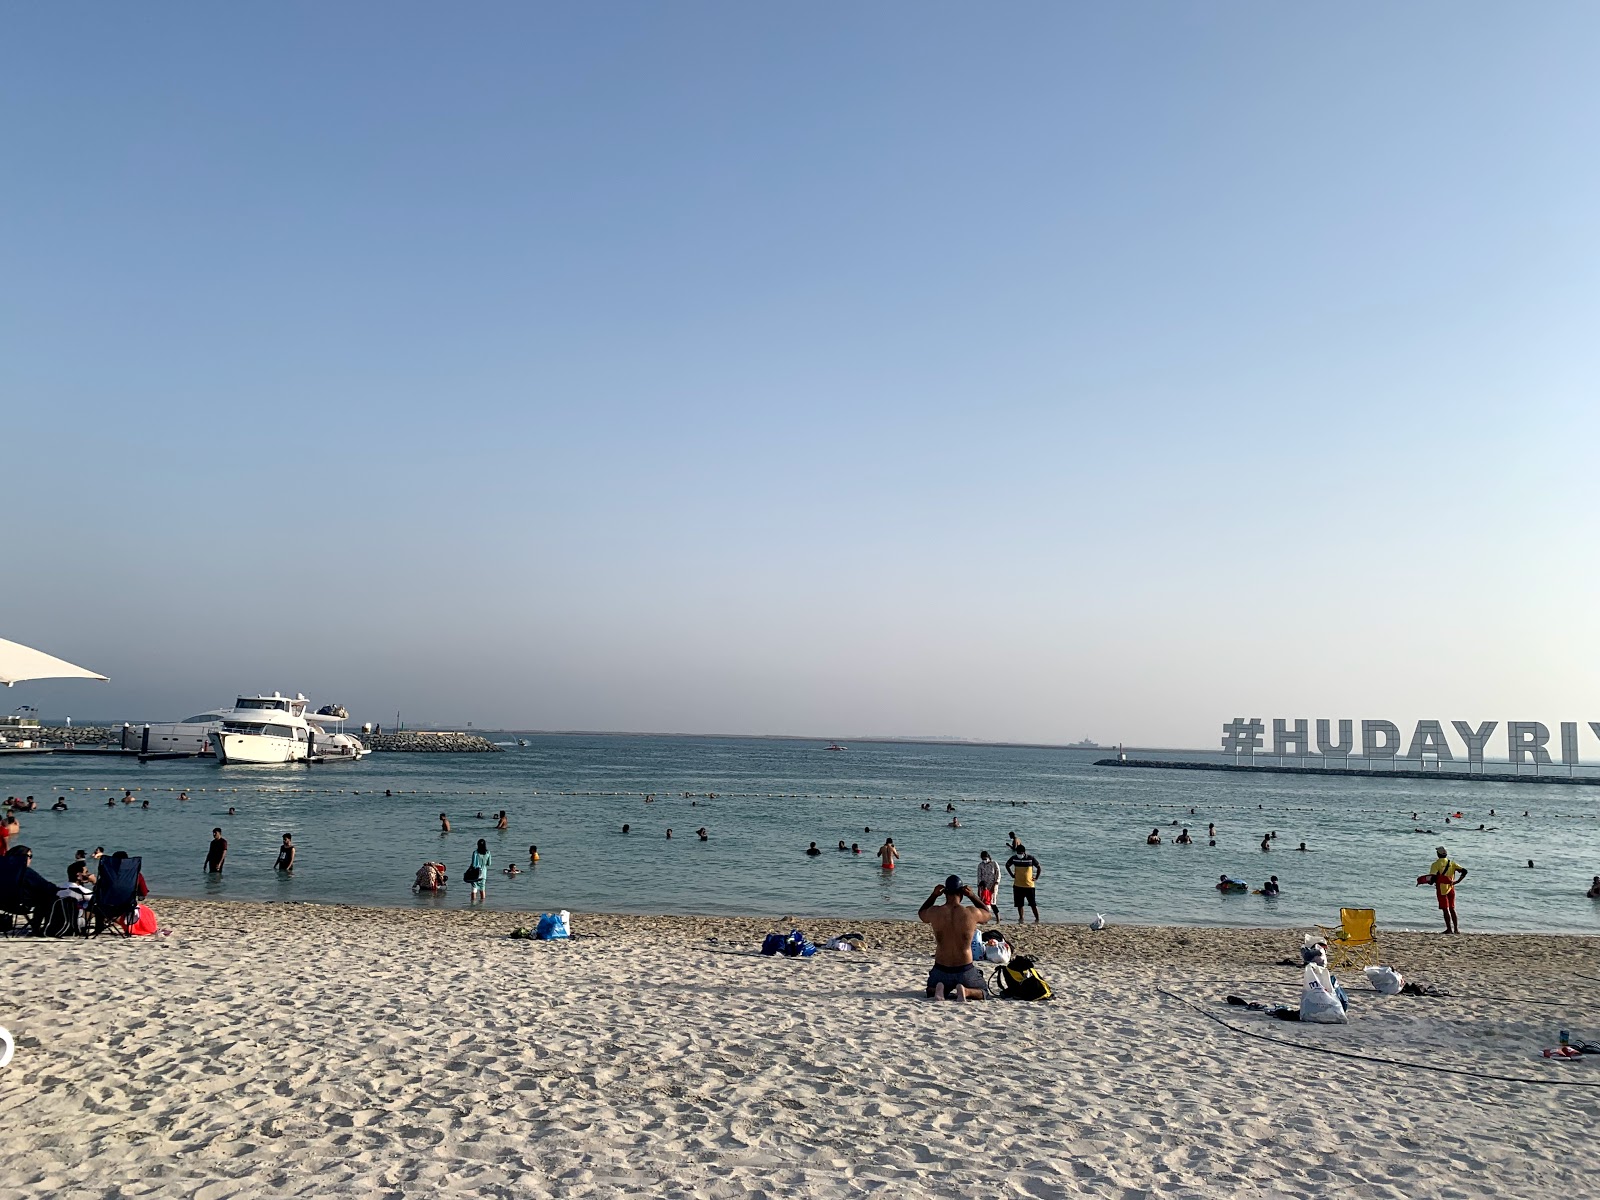 Fotografie cu Al Hudayriat Beach - locul popular printre cunoscătorii de relaxare